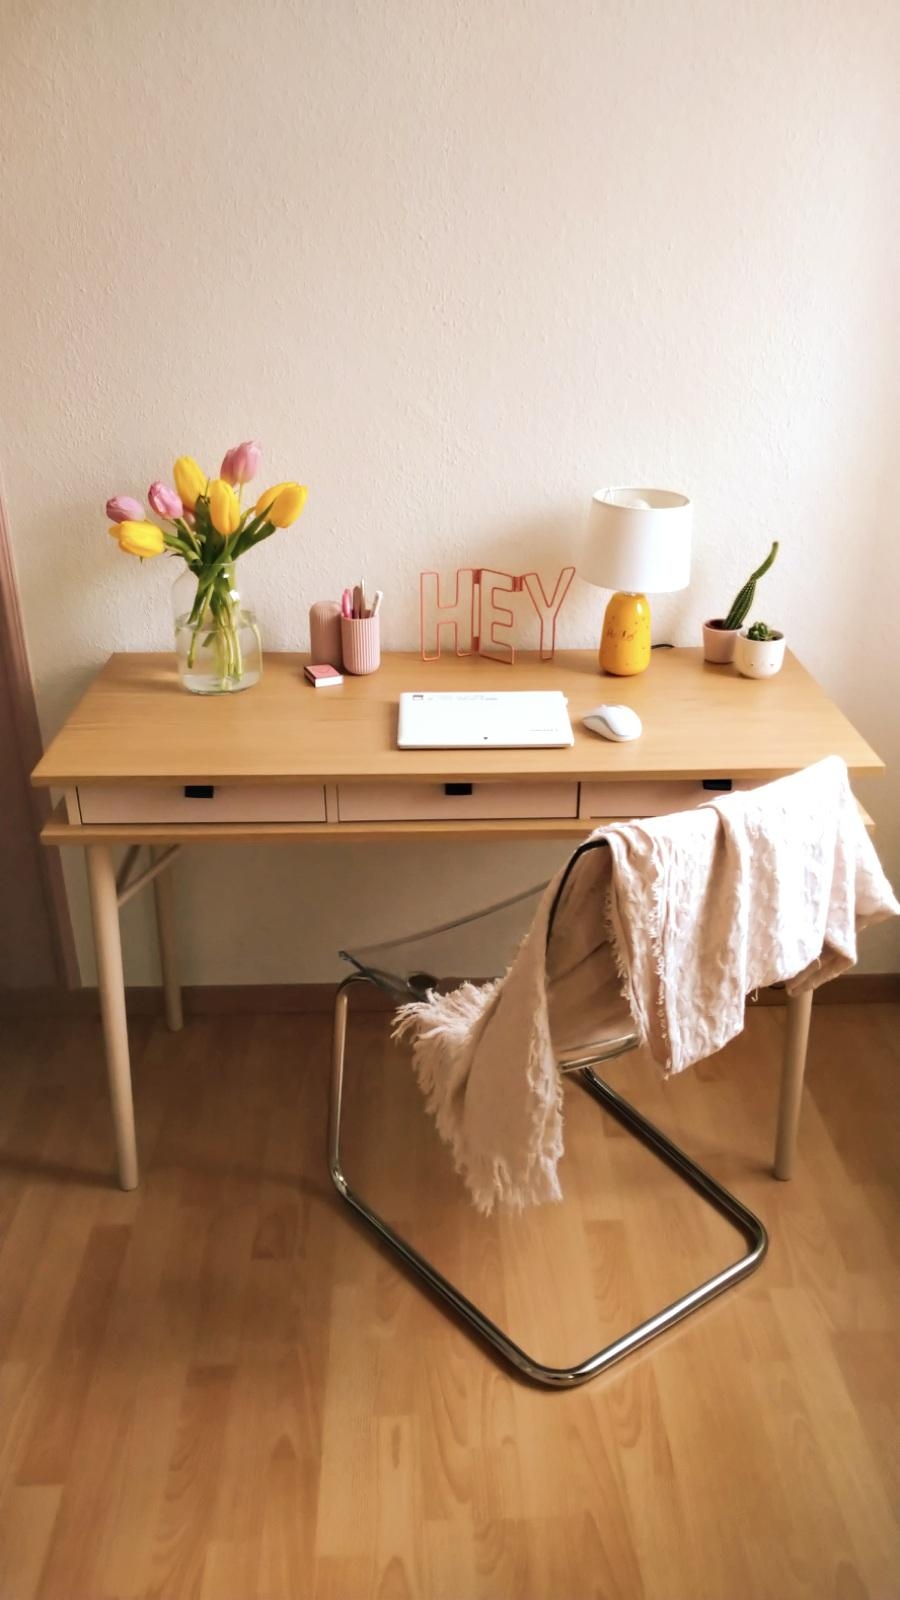 Hey ho du hübscher Schreibtisch! Herzlich Willkommen in deinem neuen Zuhause 🥰. 
#Schreibtisch #Homeoffice 